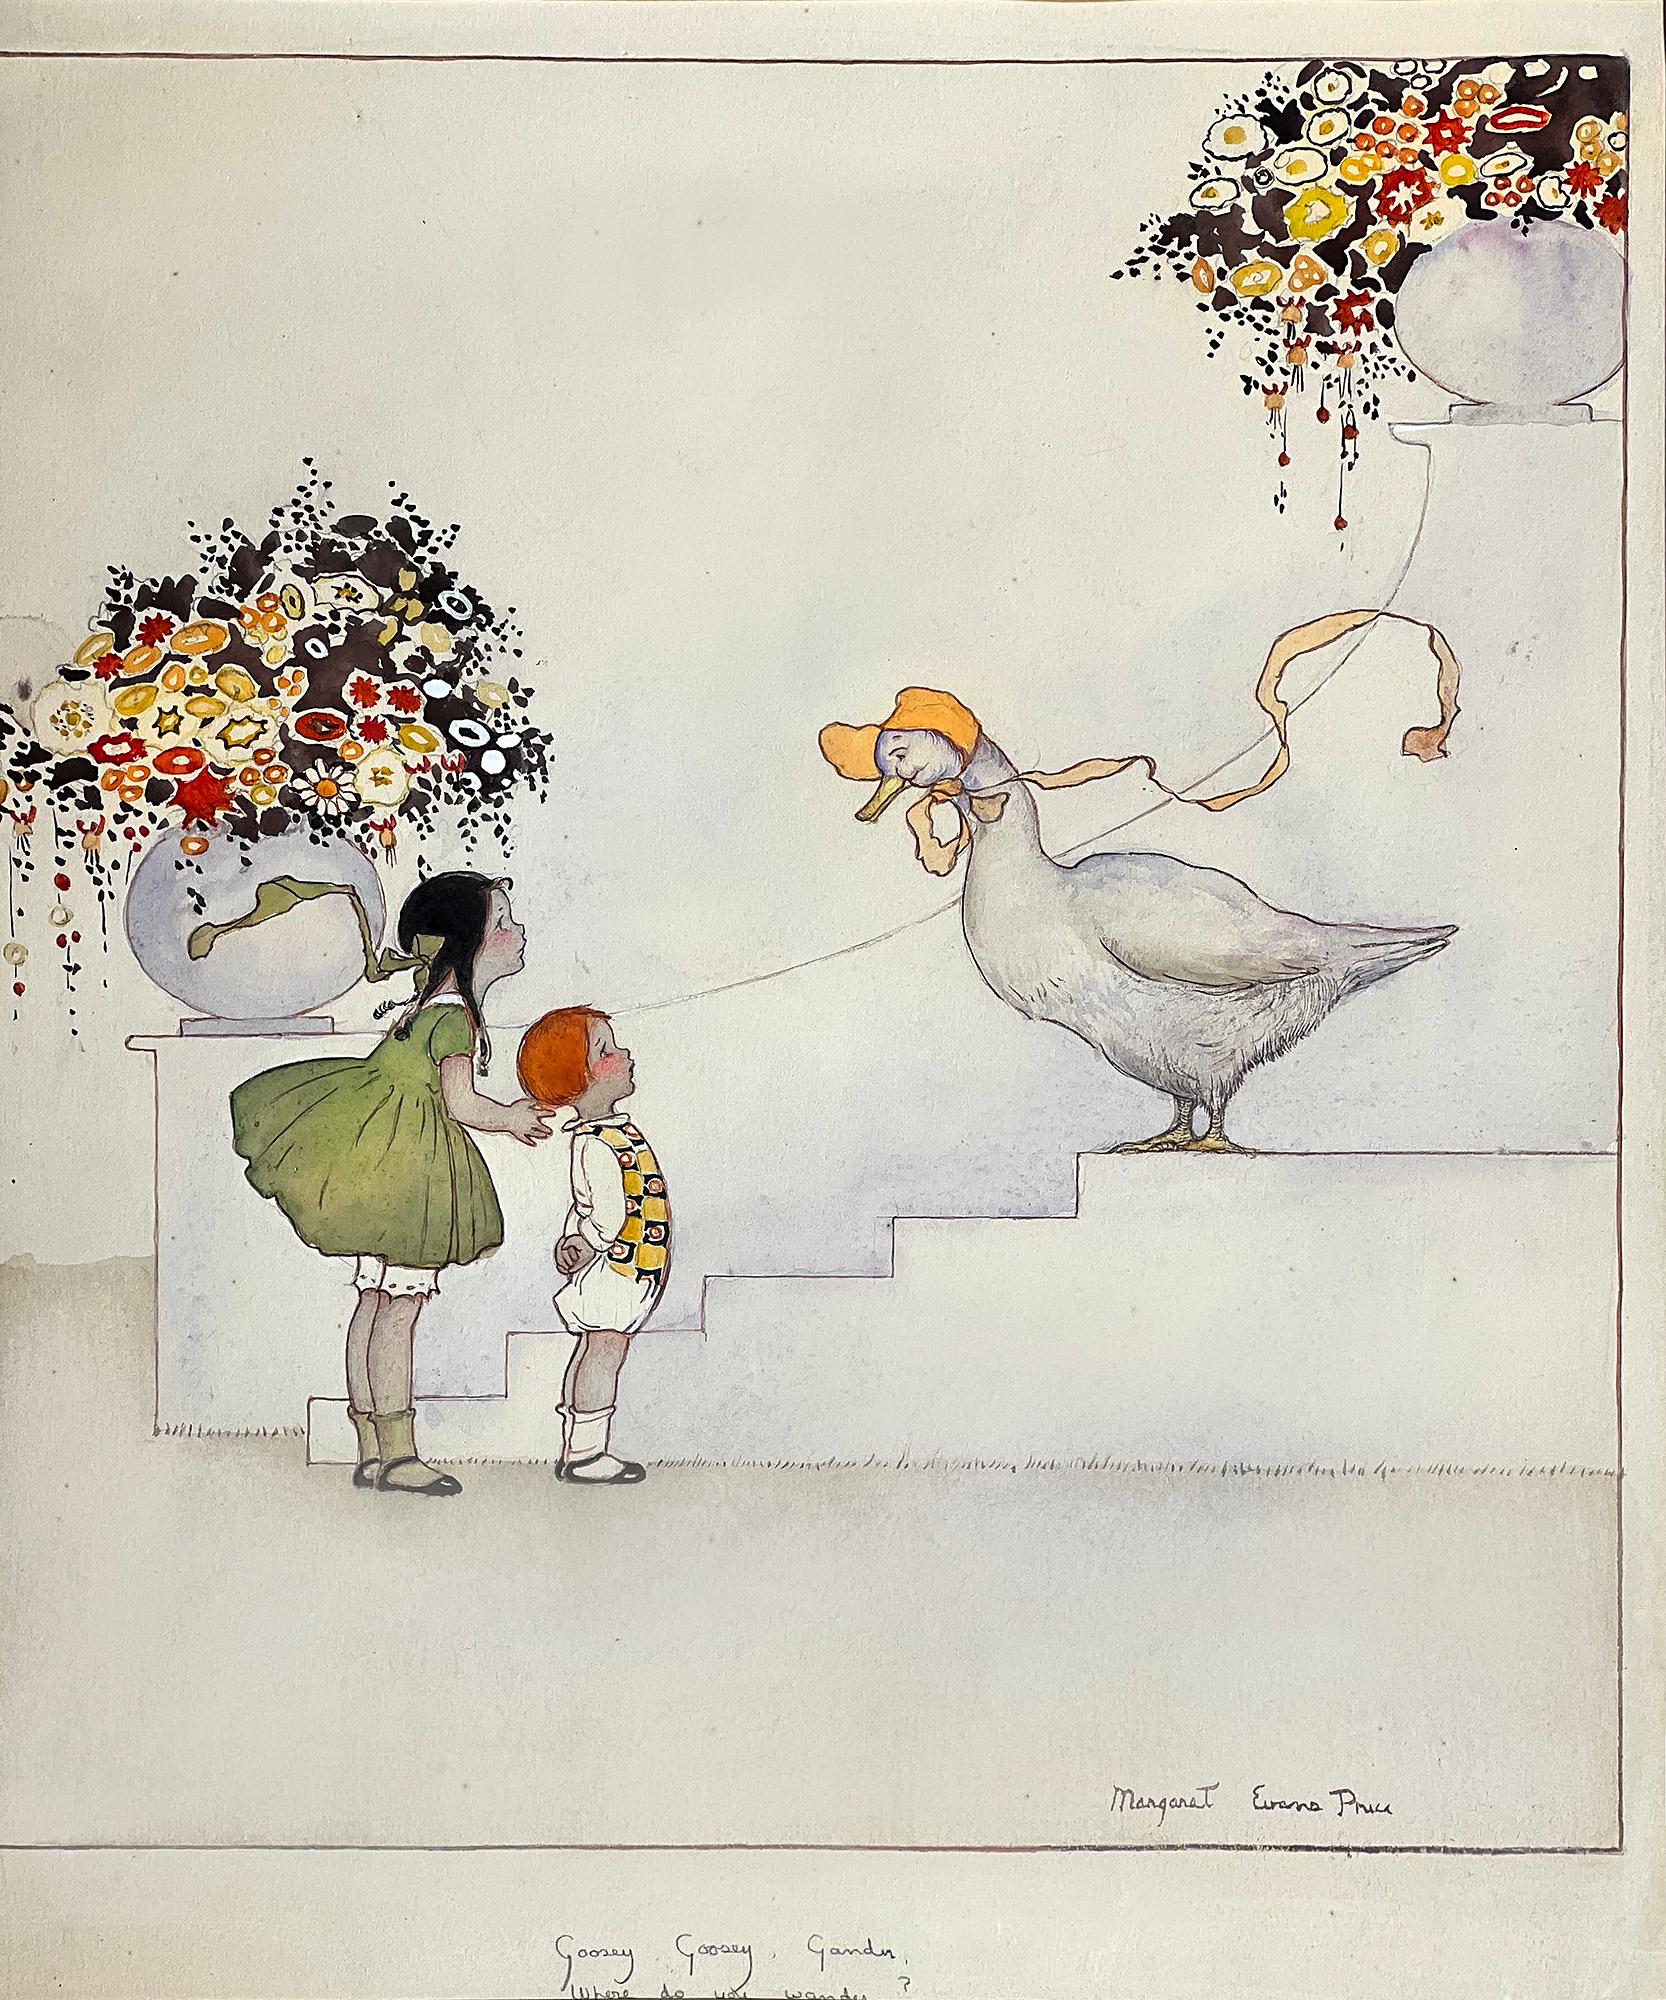 Margaret Evans Price Figurative Art – Kinderbuch-Illustrator  -  Gänseblümchen, Kinder und Blumen 